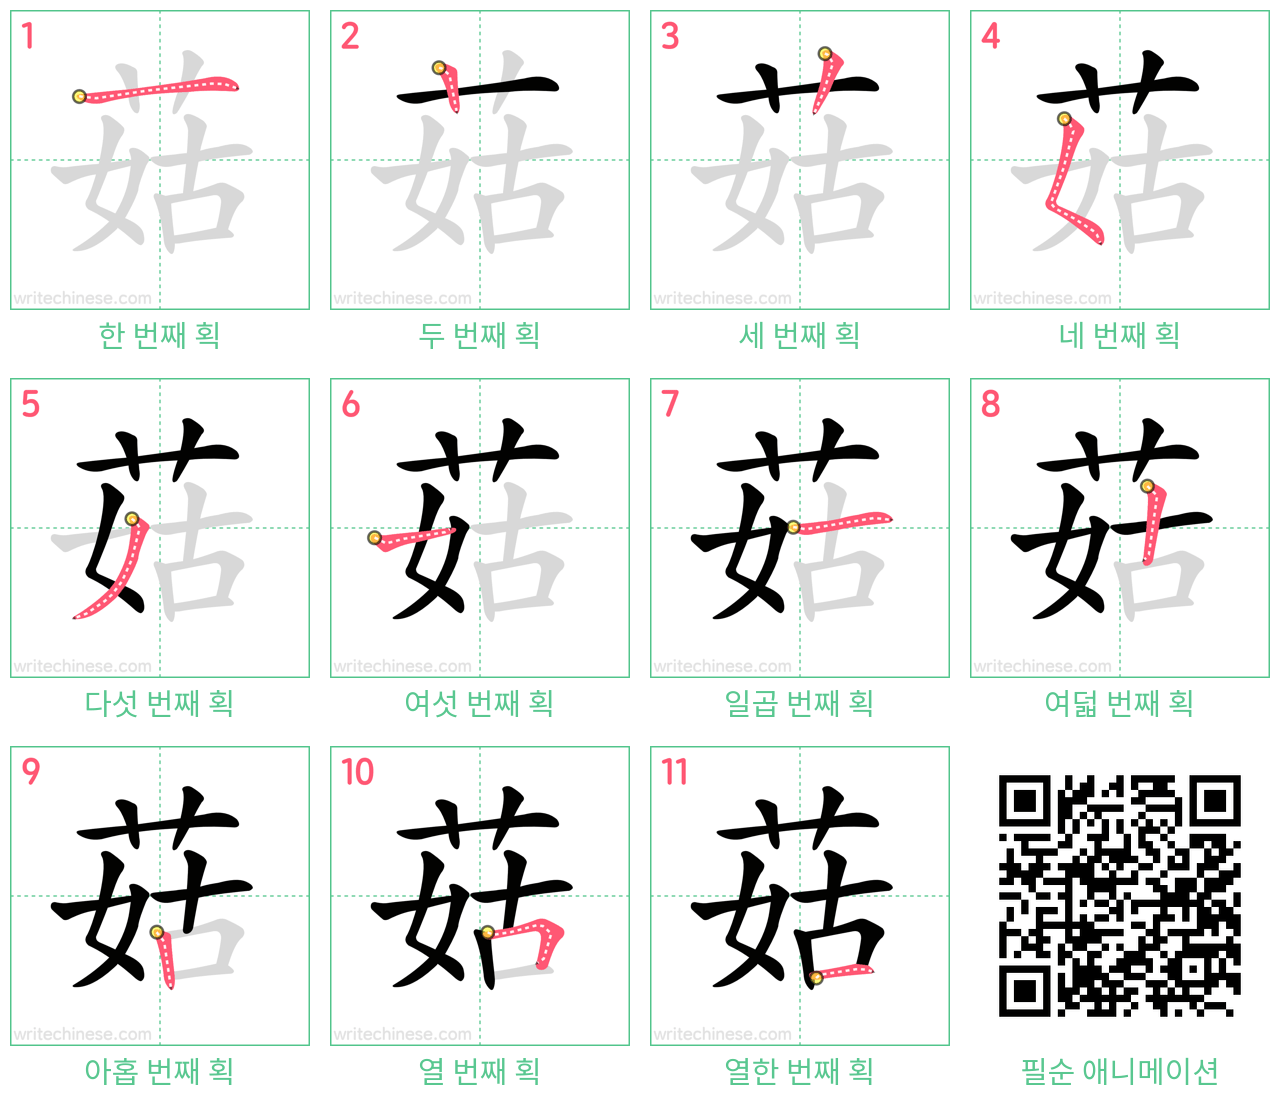 菇 step-by-step stroke order diagrams